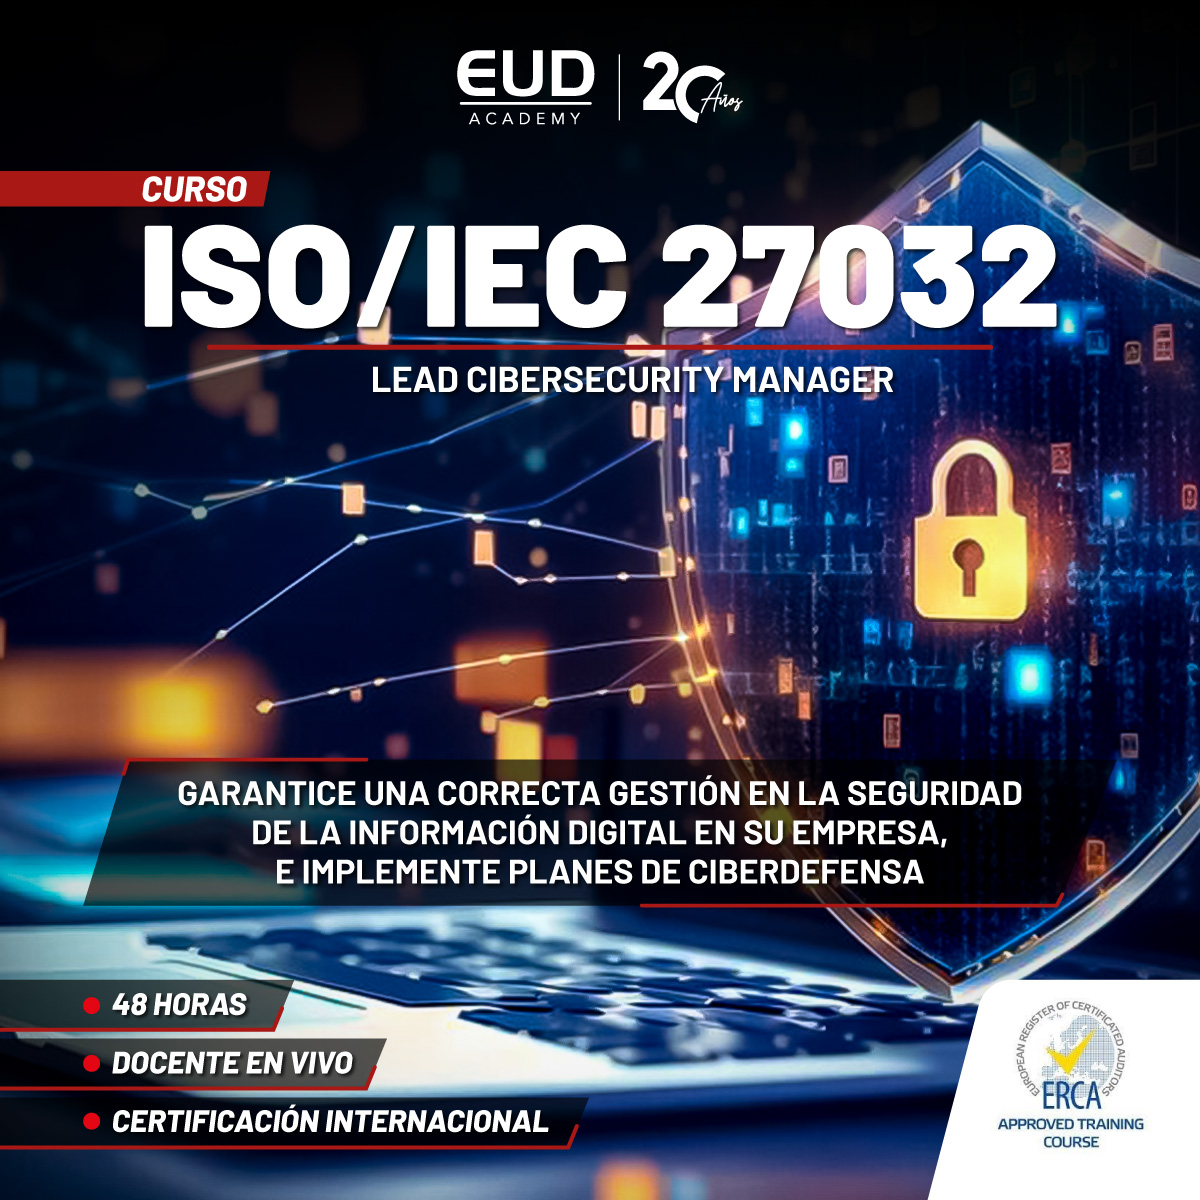 ISO 27032 en EUD Academy